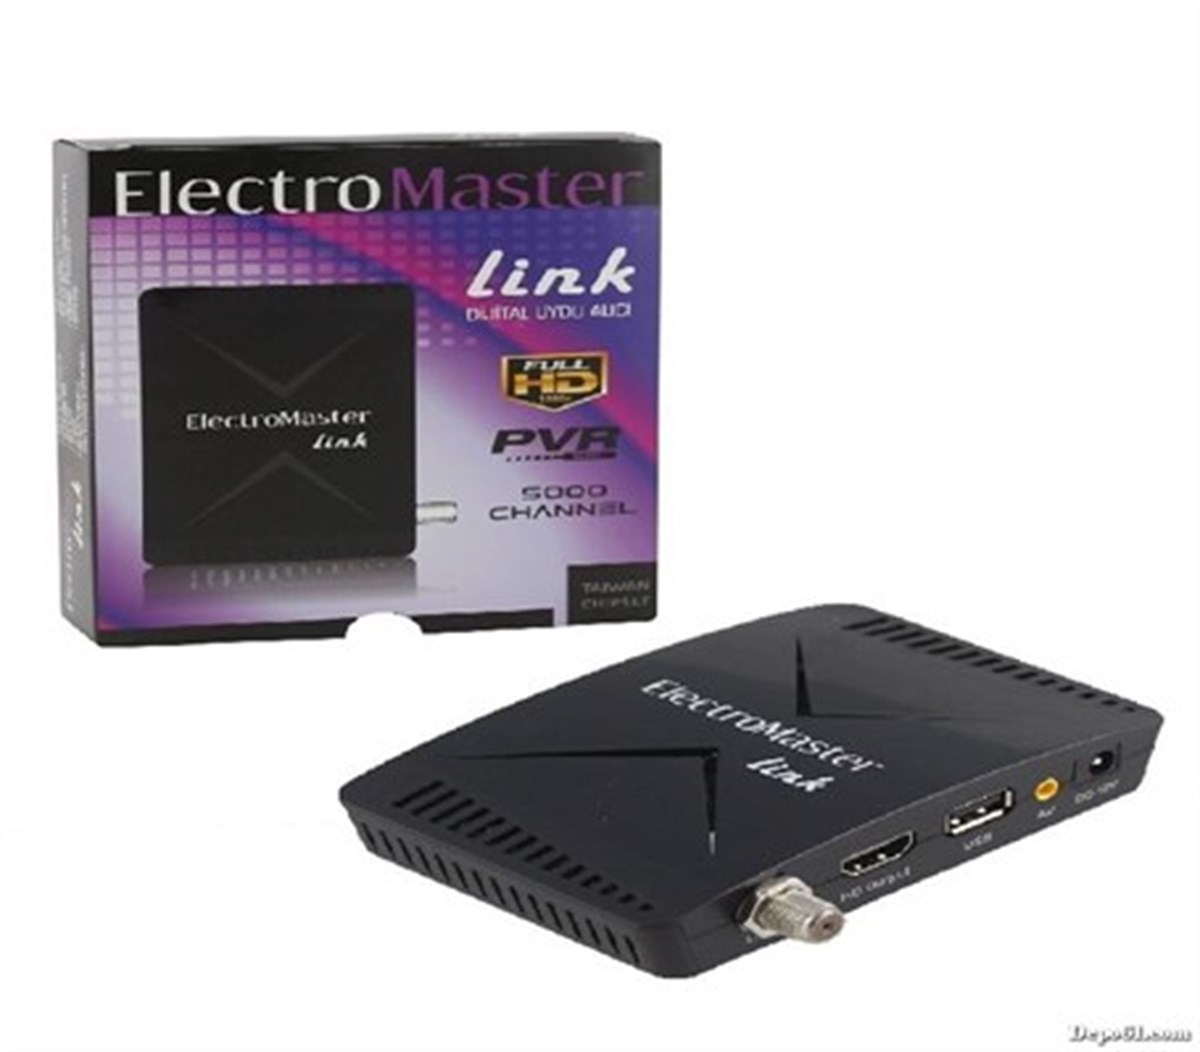 Electromaster HD Uydu Alıcısı I cinarelk.com